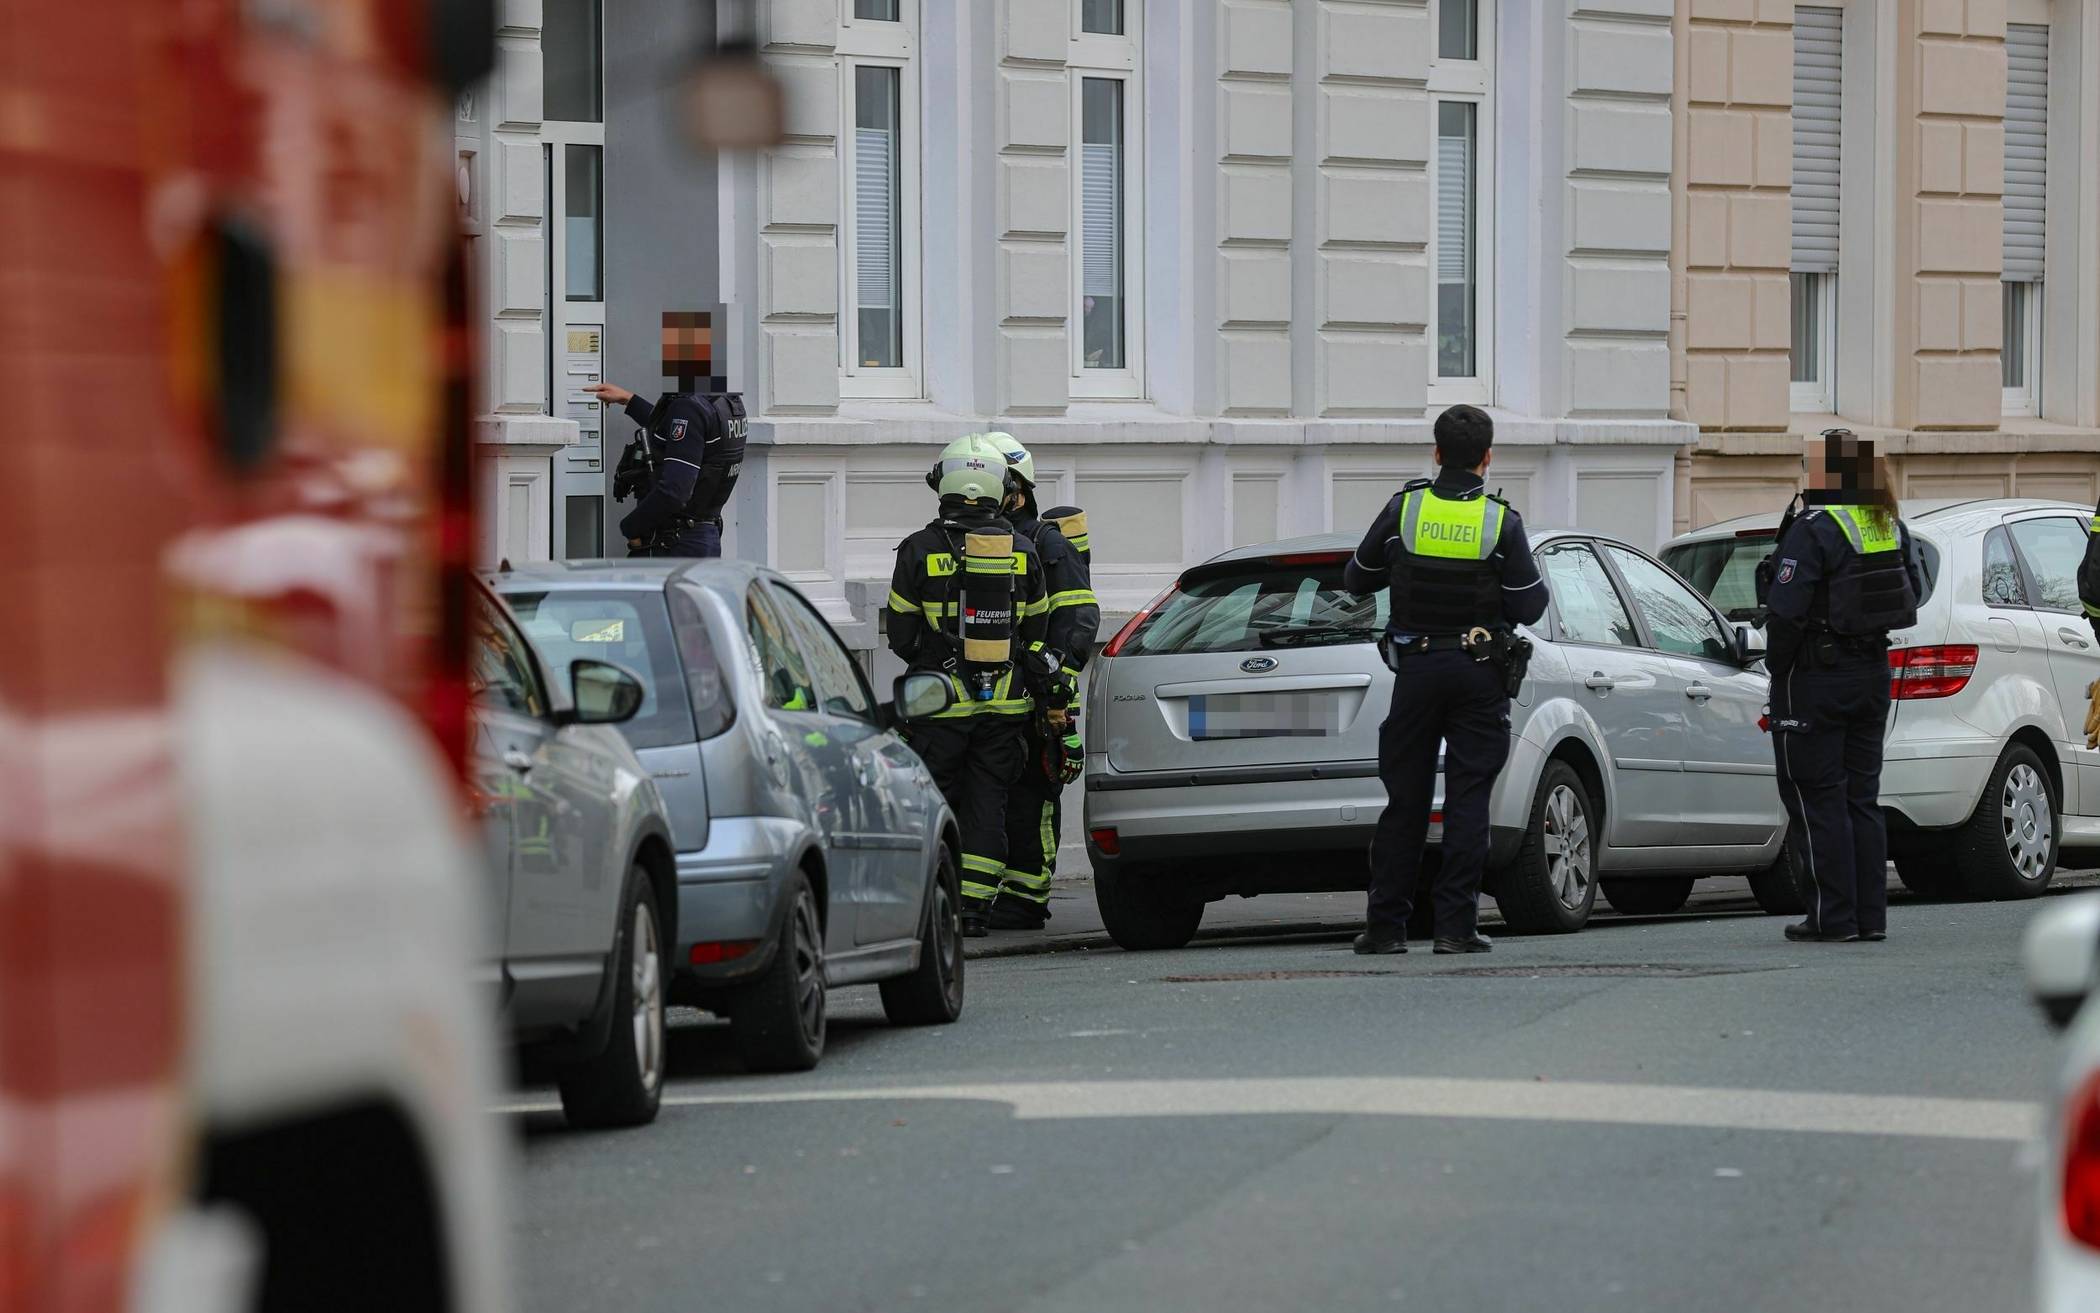 Feuerwehr-Einsatz in Wuppertal wegen Gasgeruch​